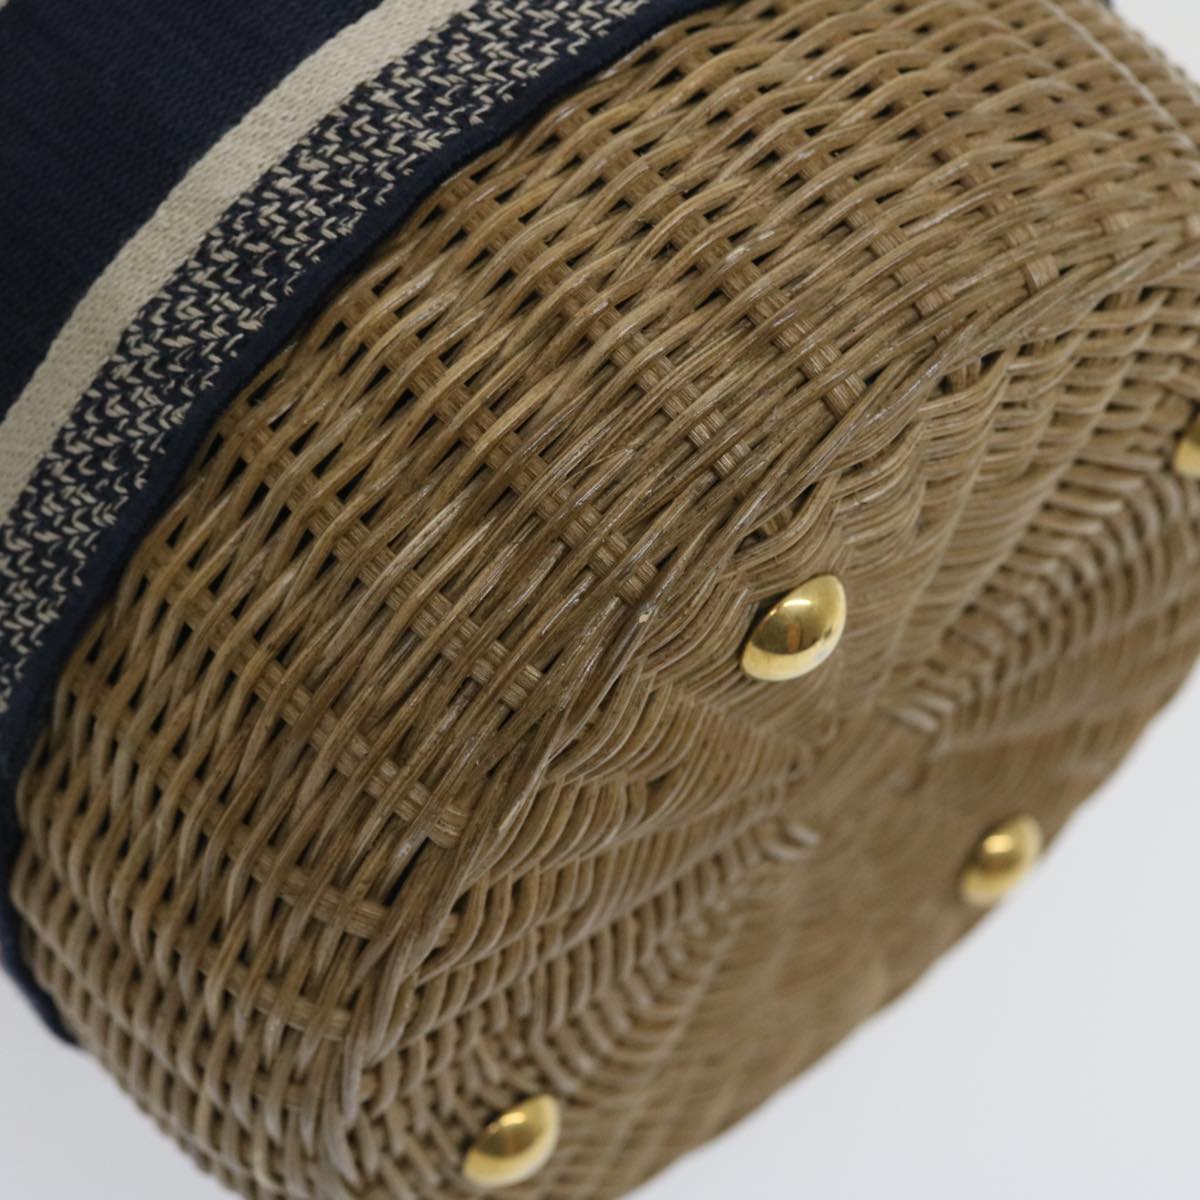 Christian Dior Basket Bag Trotter Canvas Shoulder Bag Rattan Blue Auth jk1683A